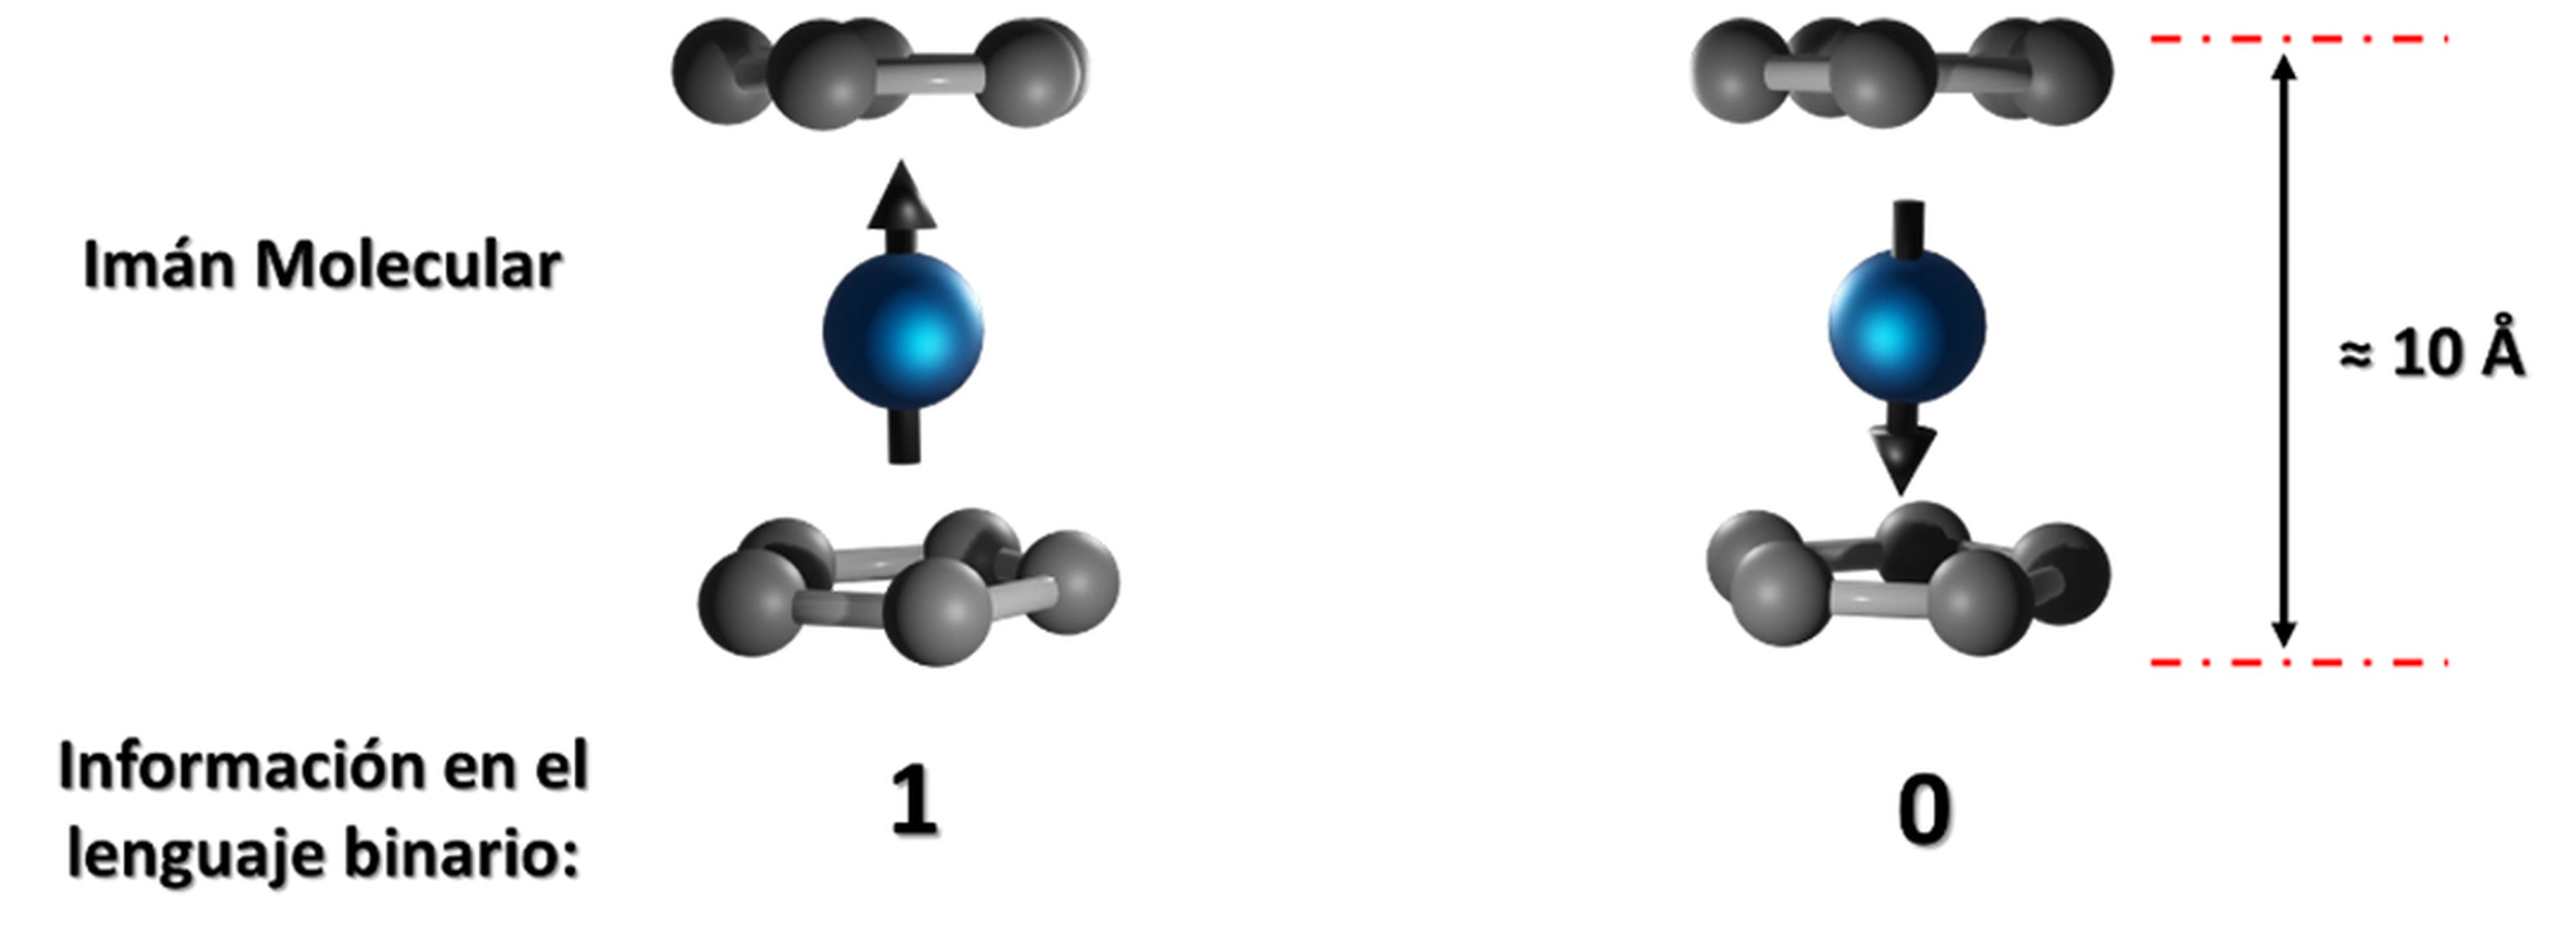 La orientación del imán molecular determina el valor 1 o 0.